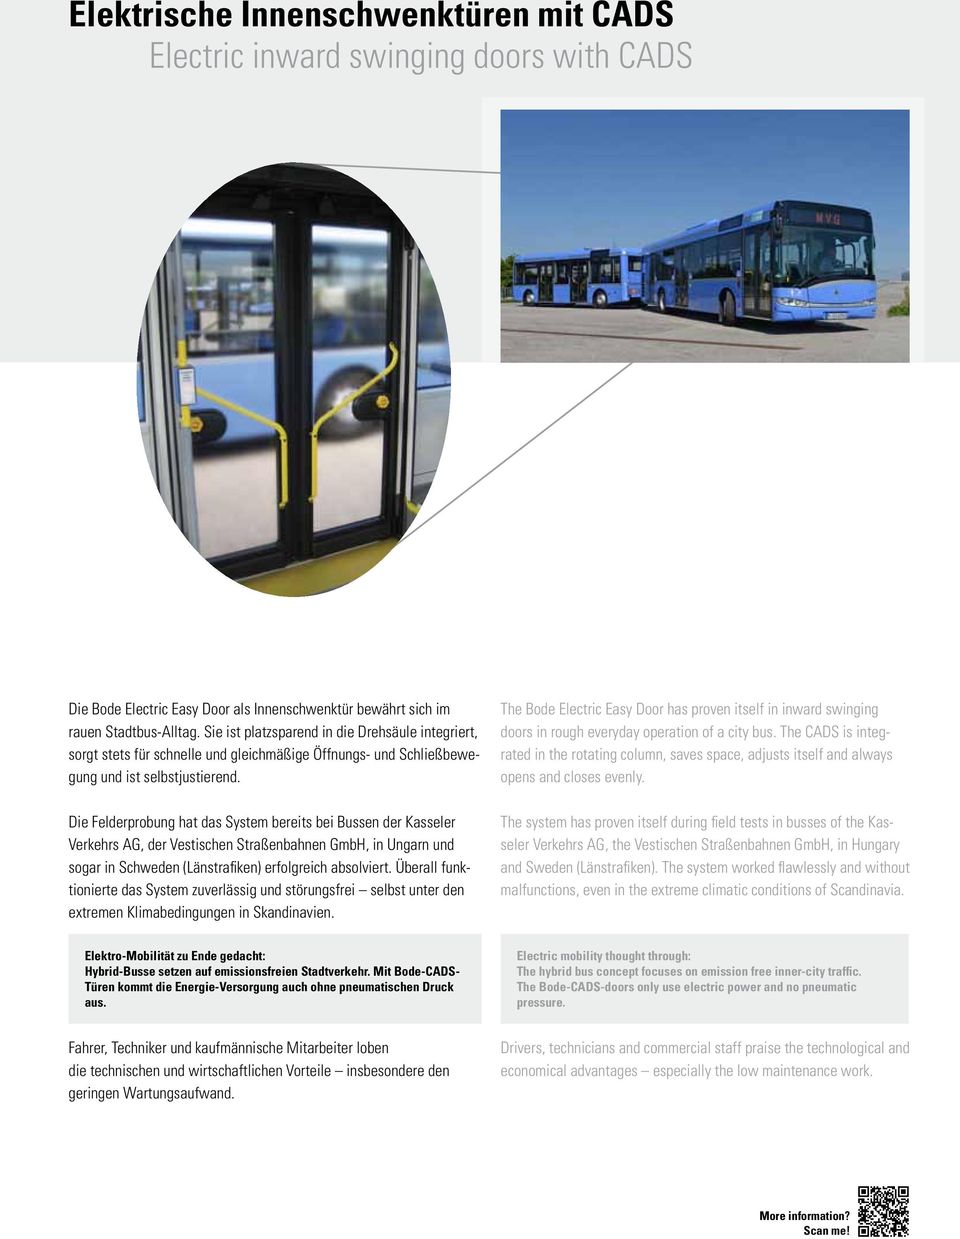 Die Felderprobung hat das System bereits bei Bussen der Kasseler Verkehrs AG, der Vestischen Straßenbahnen GmbH, in Ungarn und sogar in Schweden (Länstrafiken) erfolgreich absolviert.